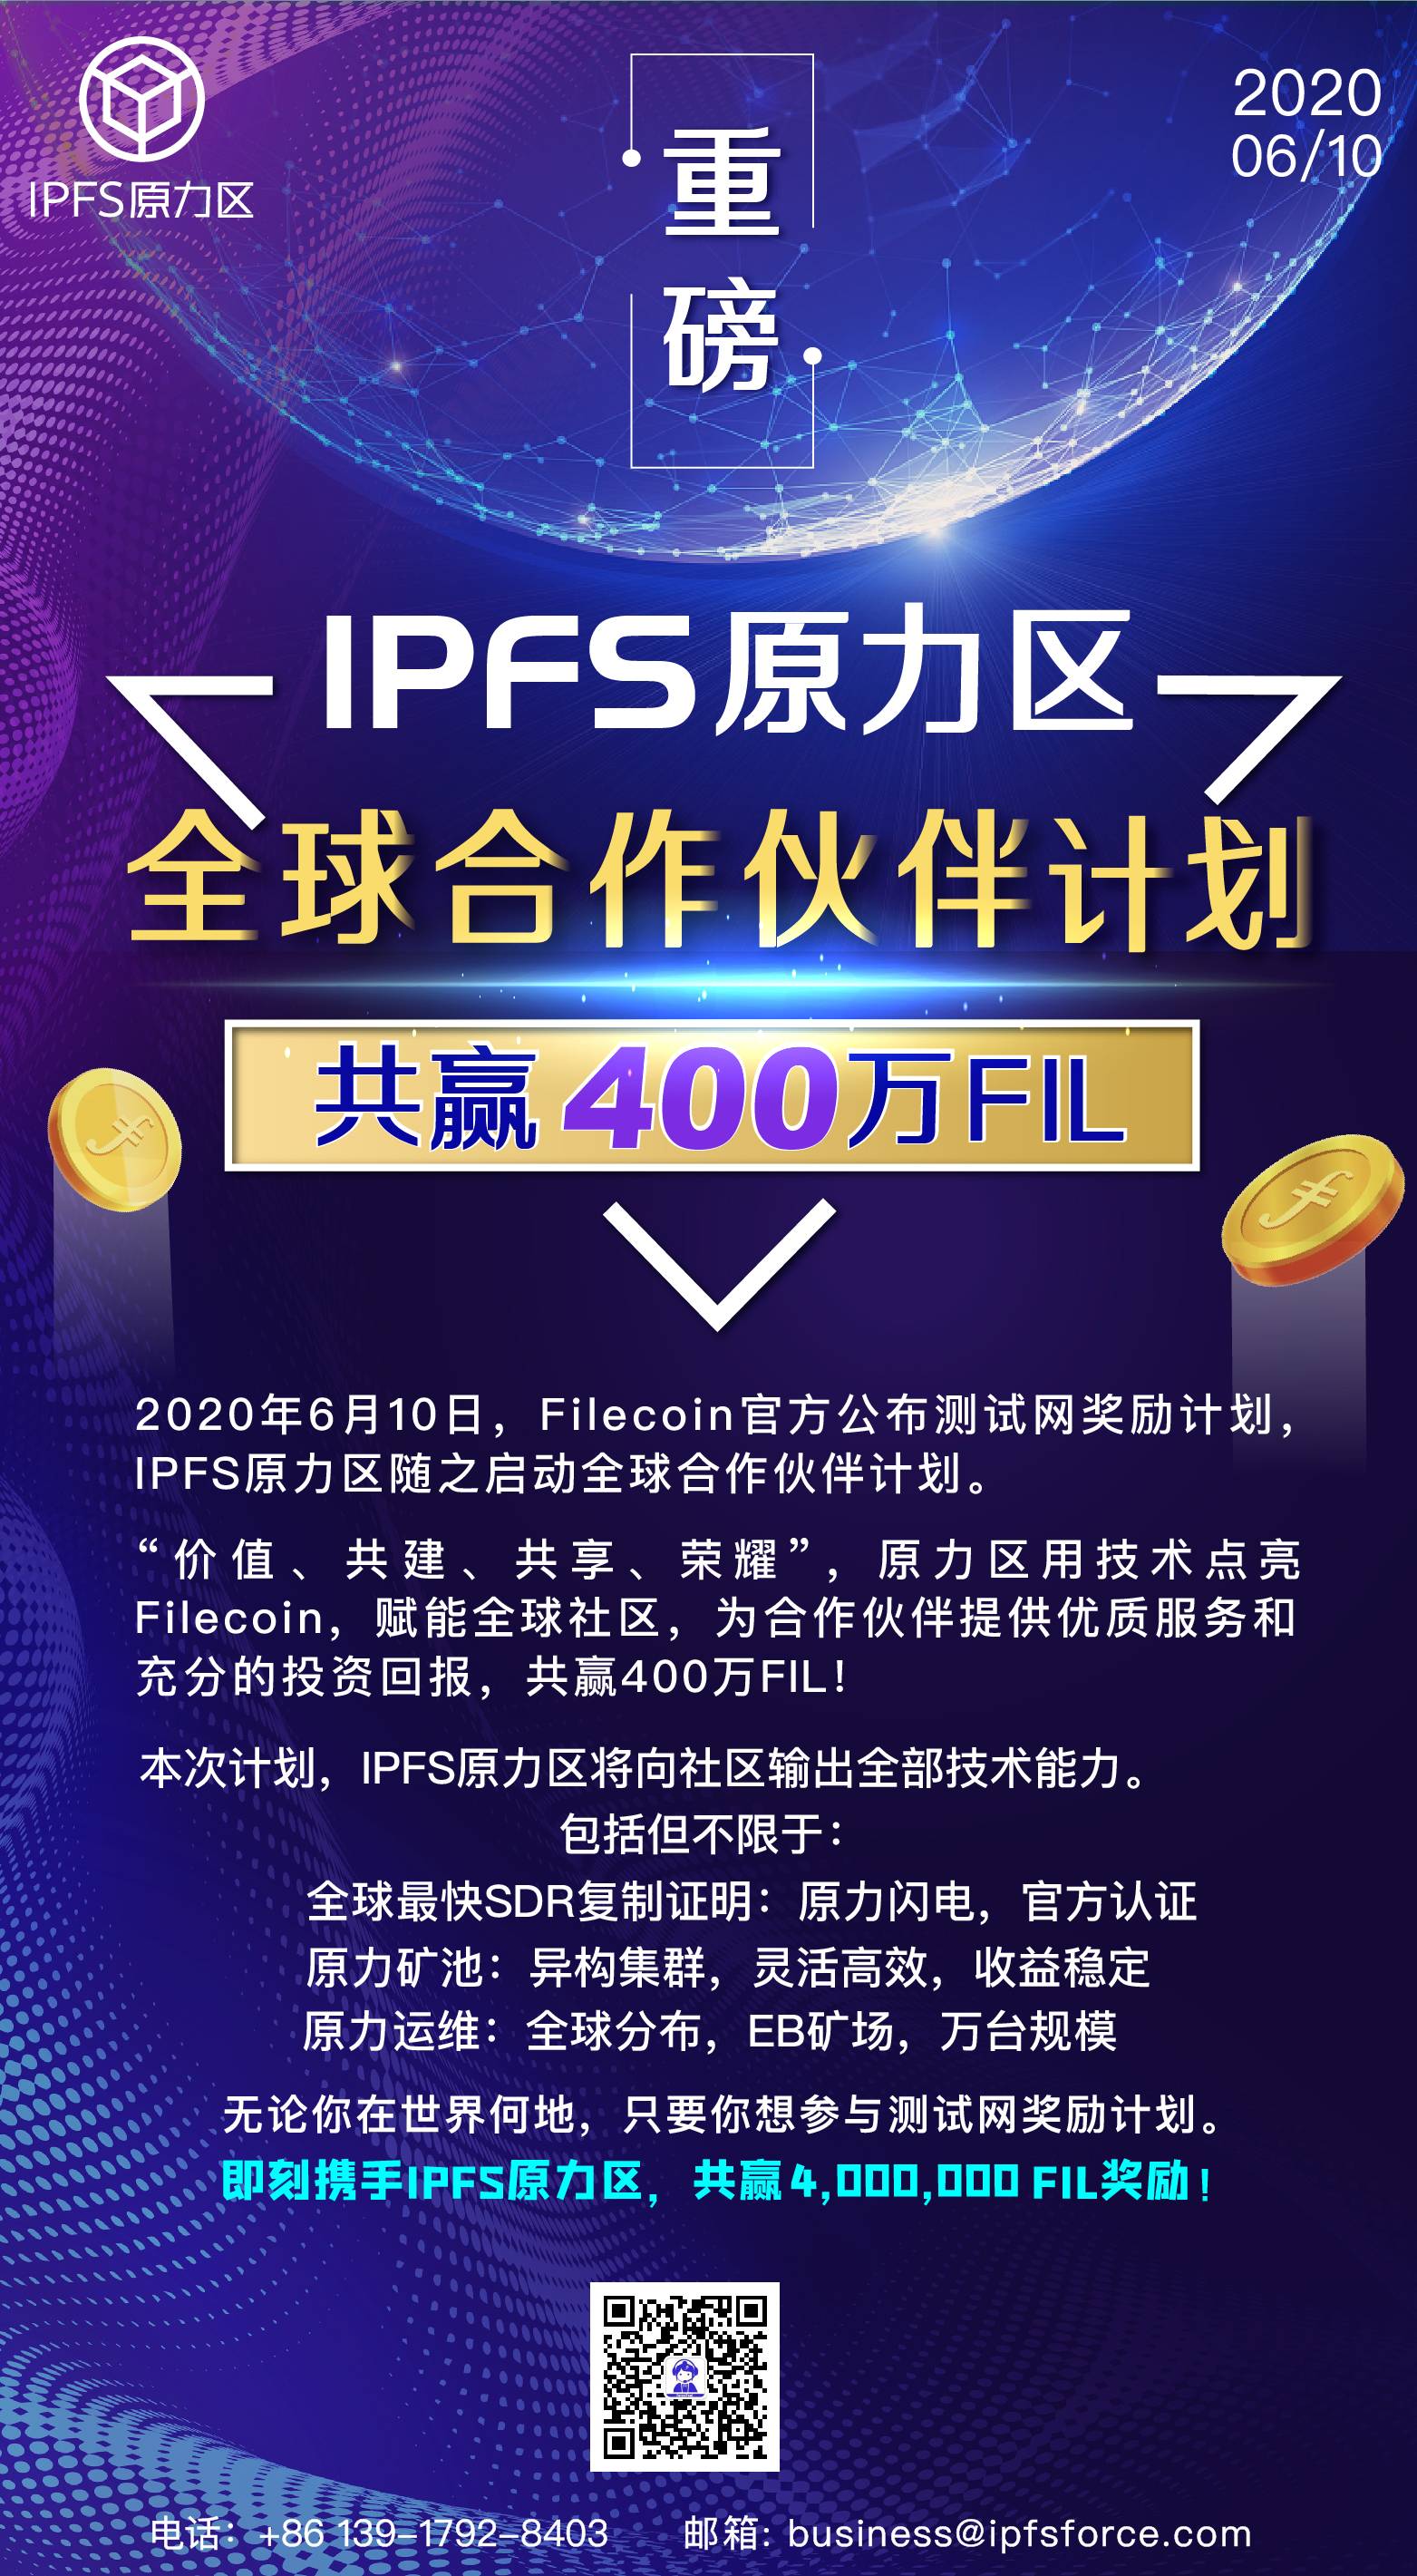 IPFS原力区开启全球合作伙伴计划，共赢四百万FIL